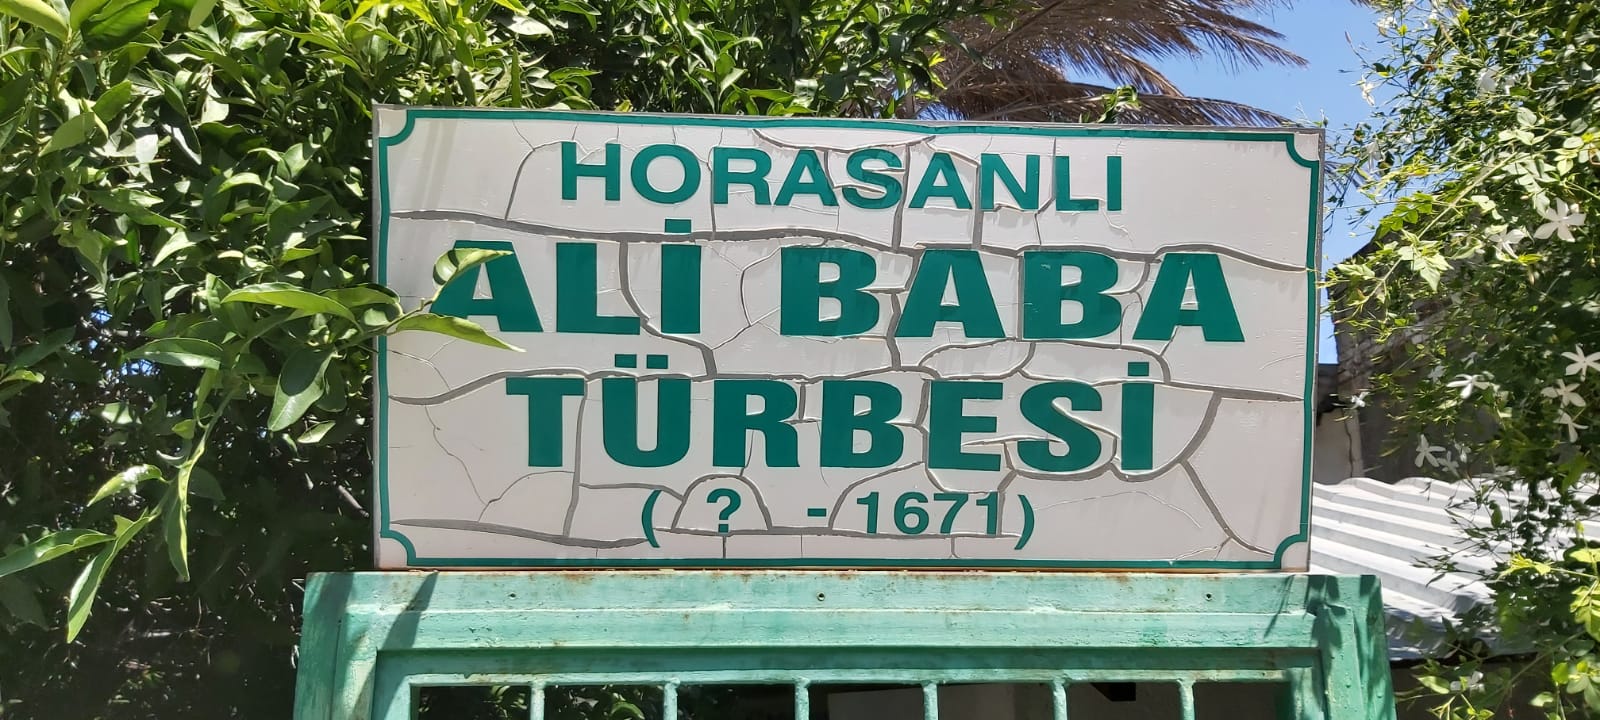 Horasanlı Ali Baba